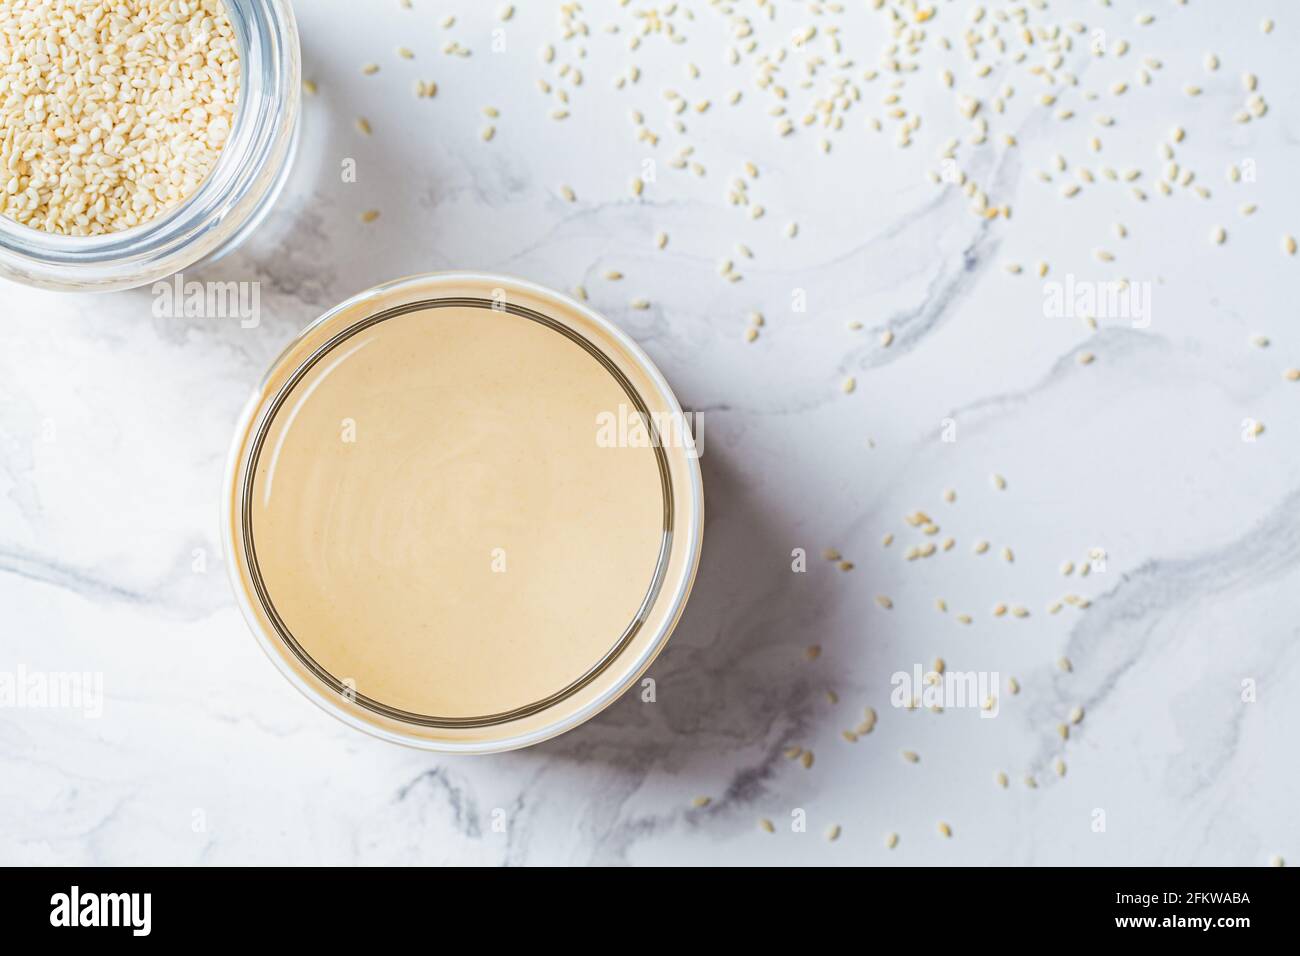 Pasta di sesamo - tahini in un vaso di vetro, sfondo di marmo bianco. Concetto di cucina israeliana. Foto Stock